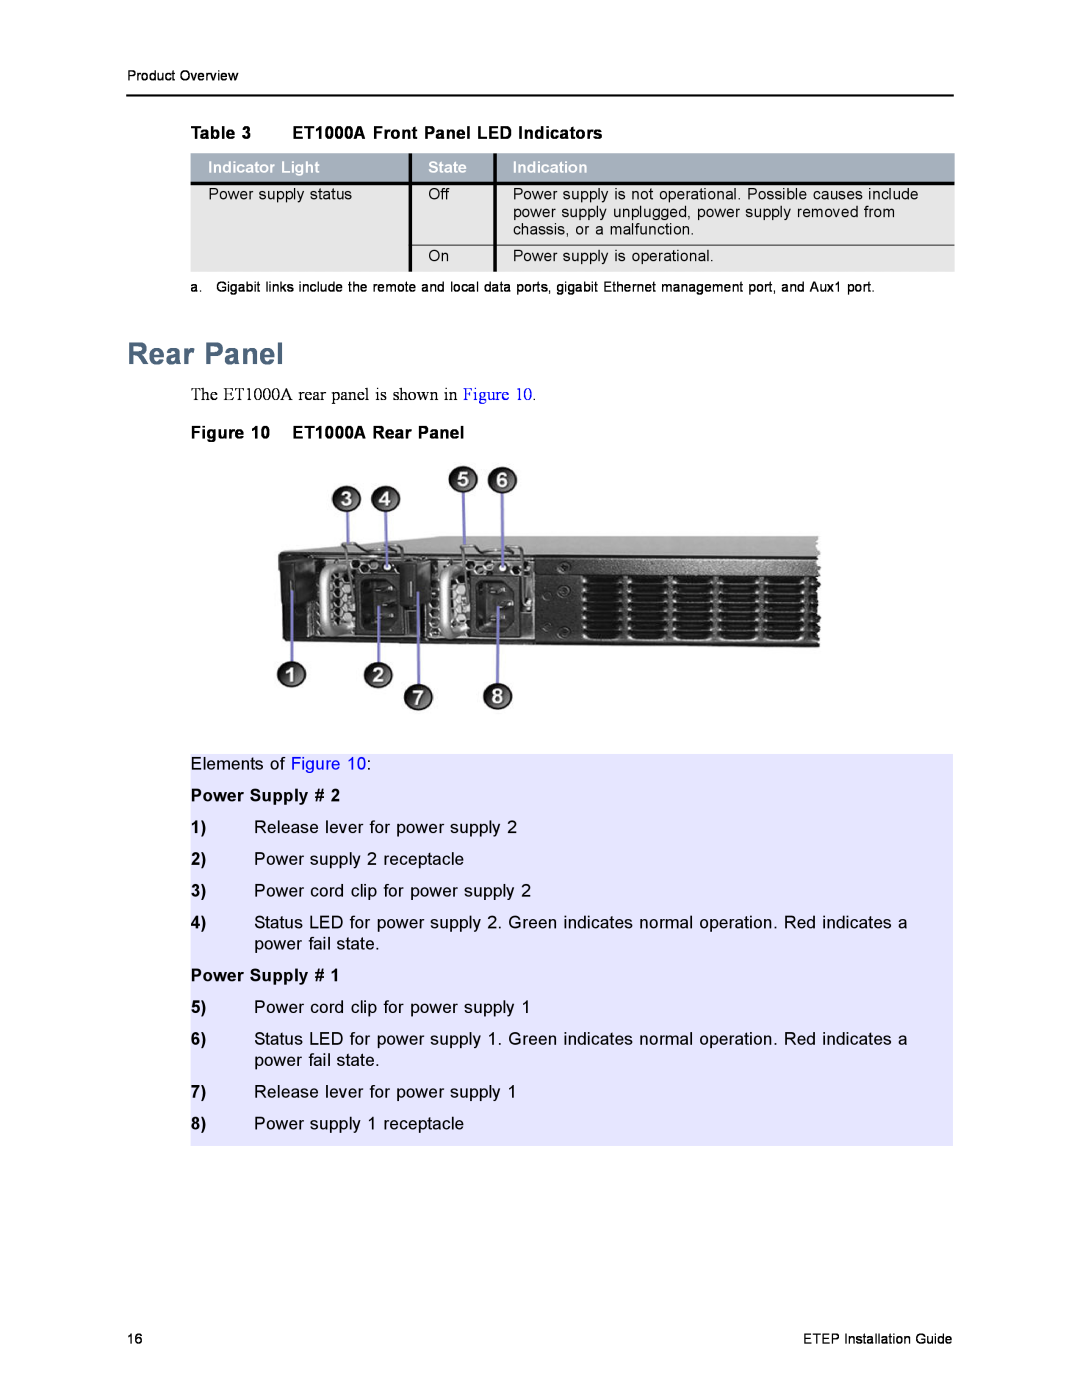 Black Box ET0010A, ET0100A, ET10000A manual ET1000A Front Panel LED Indicators, ET1000A Rear Panel, Power Supply # 